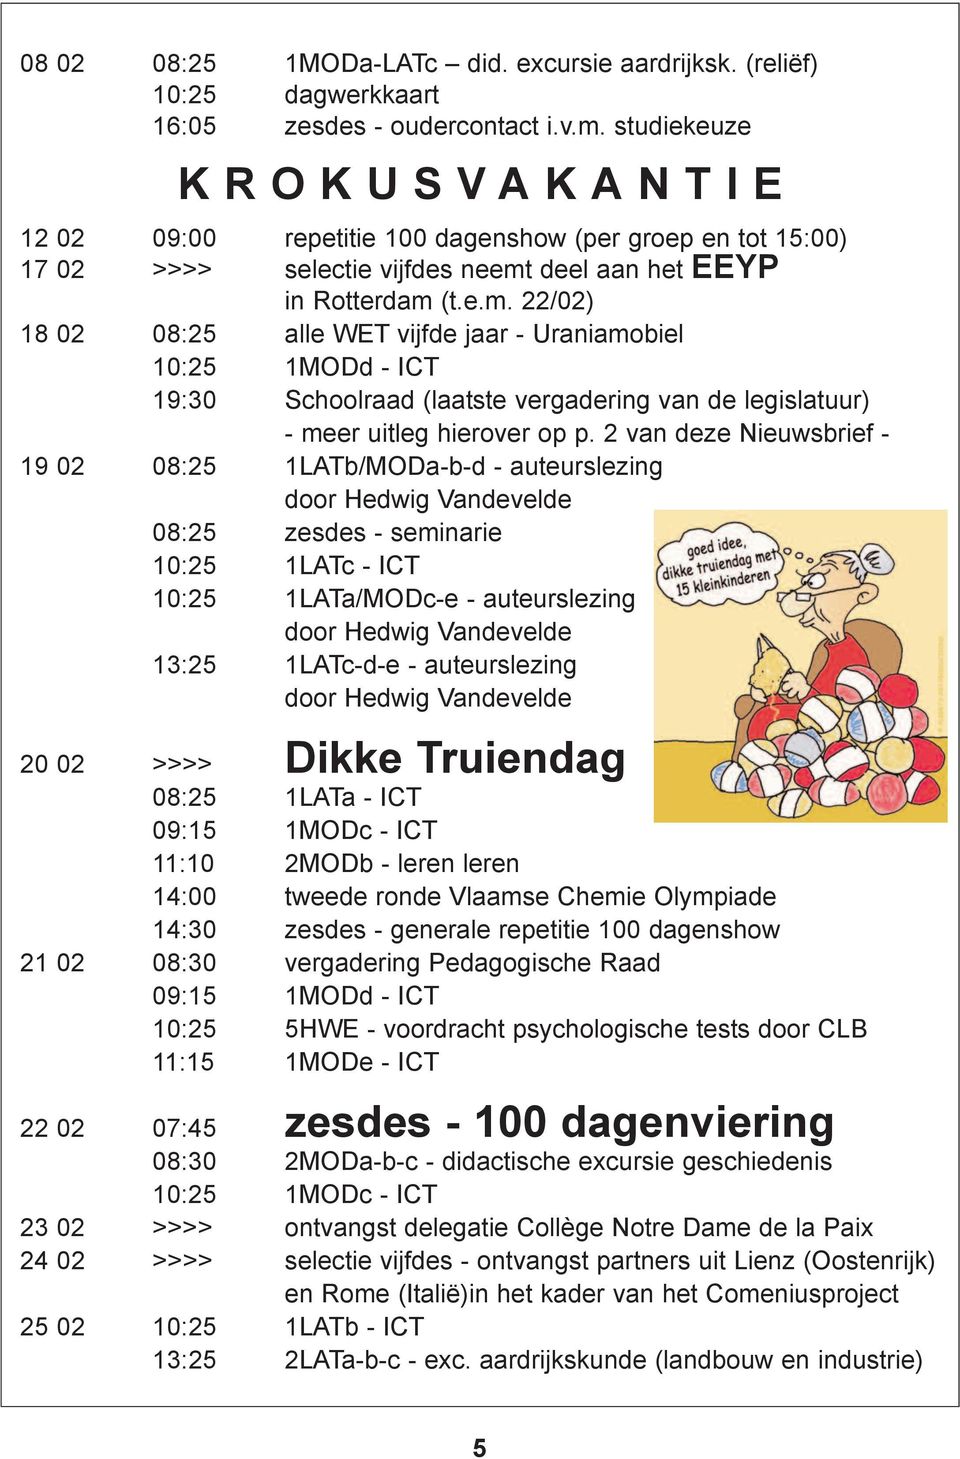 deel aan het EEYP in Rotterdam (t.e.m. 22/02) 18 02 08:25 alle WET vijfde jaar - Uraniamobiel 10:25 1MODd - ICT 19:30 Schoolraad (laatste vergadering van de legislatuur) - meer uitleg hierover op p.